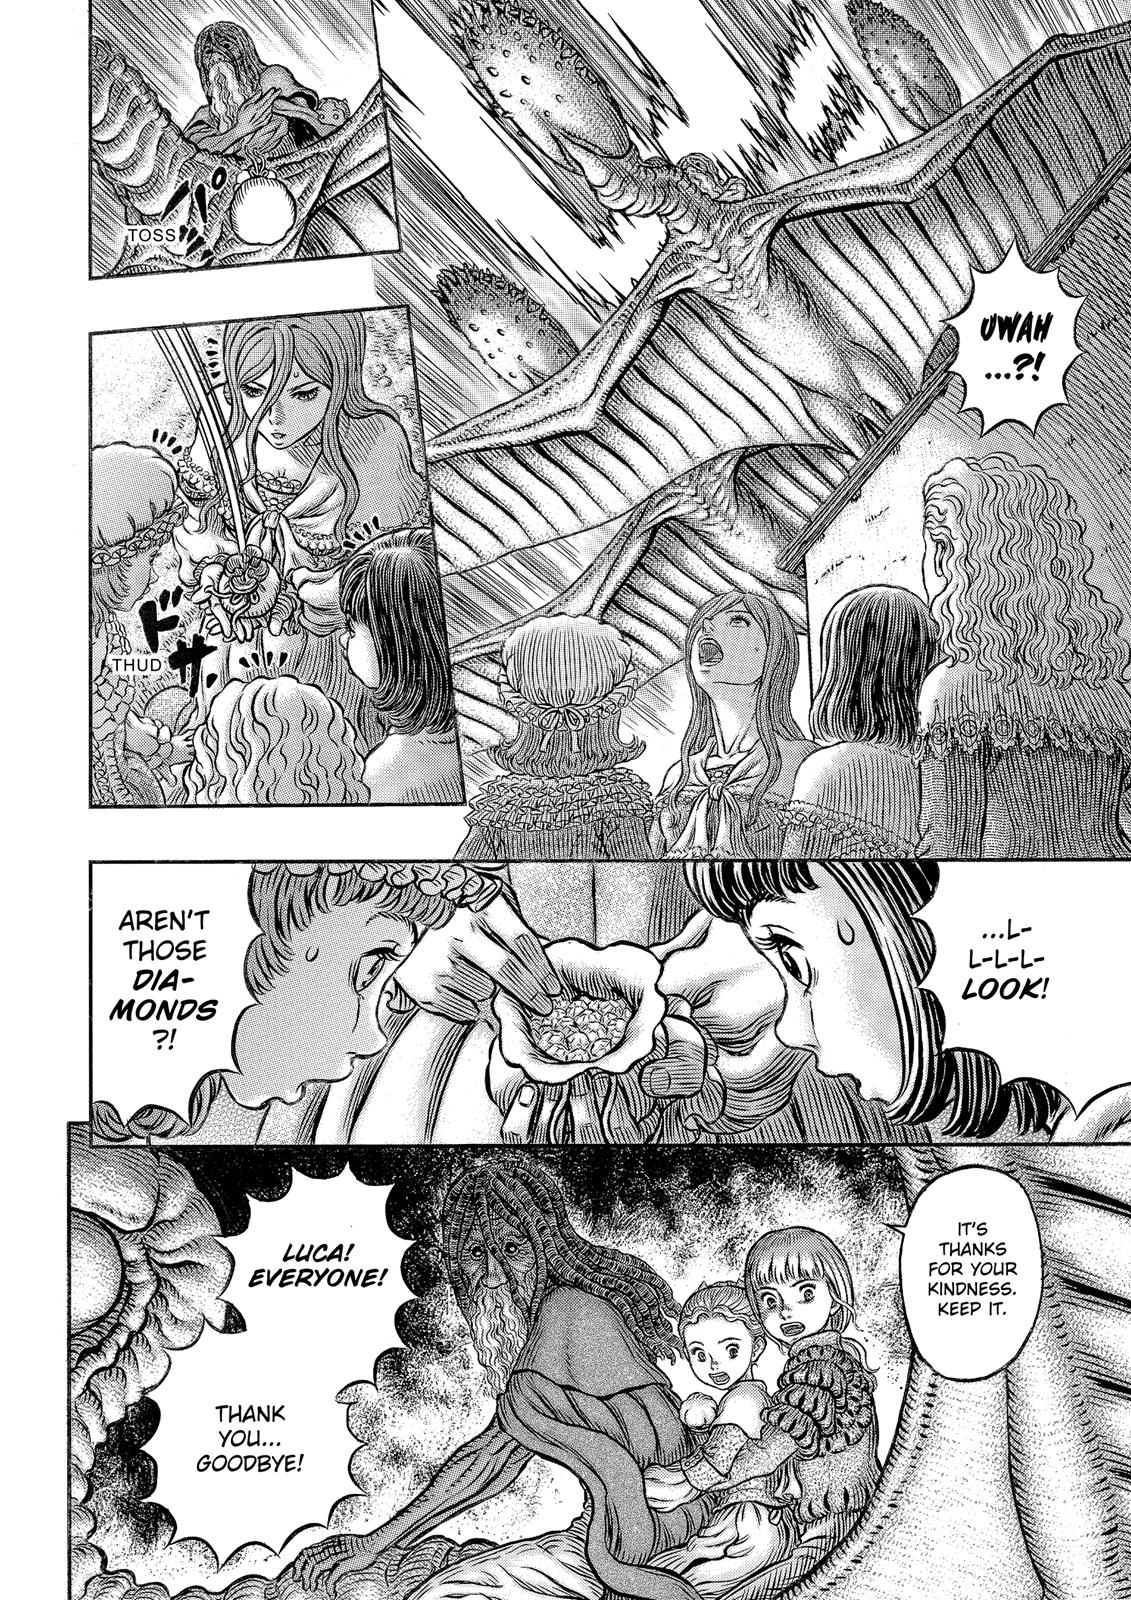 Berserk Manga Chapter 341 image 15